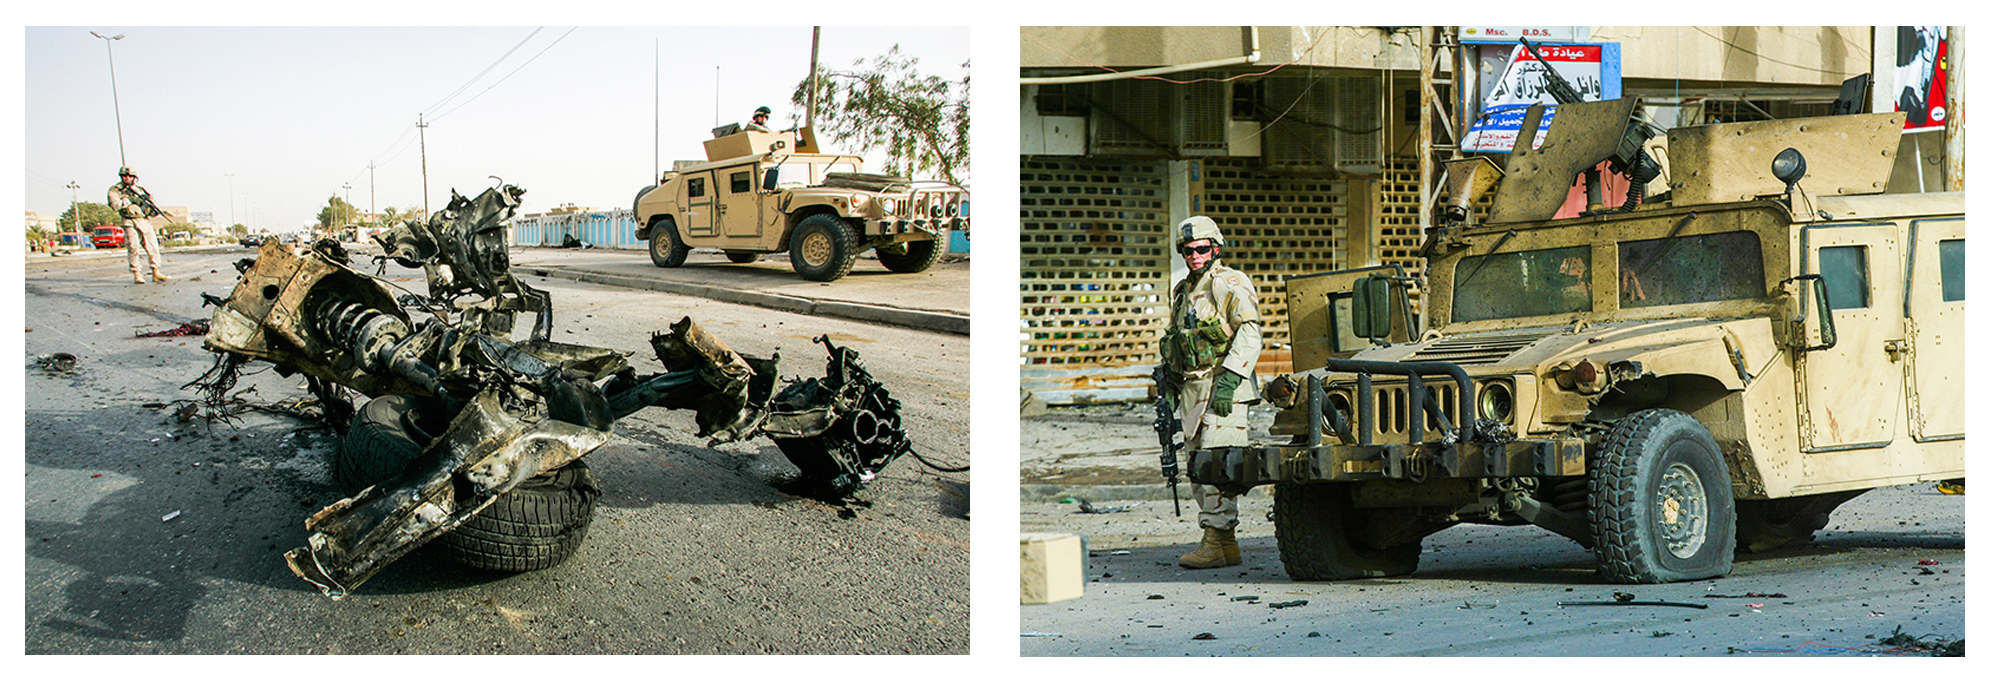 2005年伊拉克,赶来增援的美军士兵在美军遇袭现场保持警戒(左)/一名